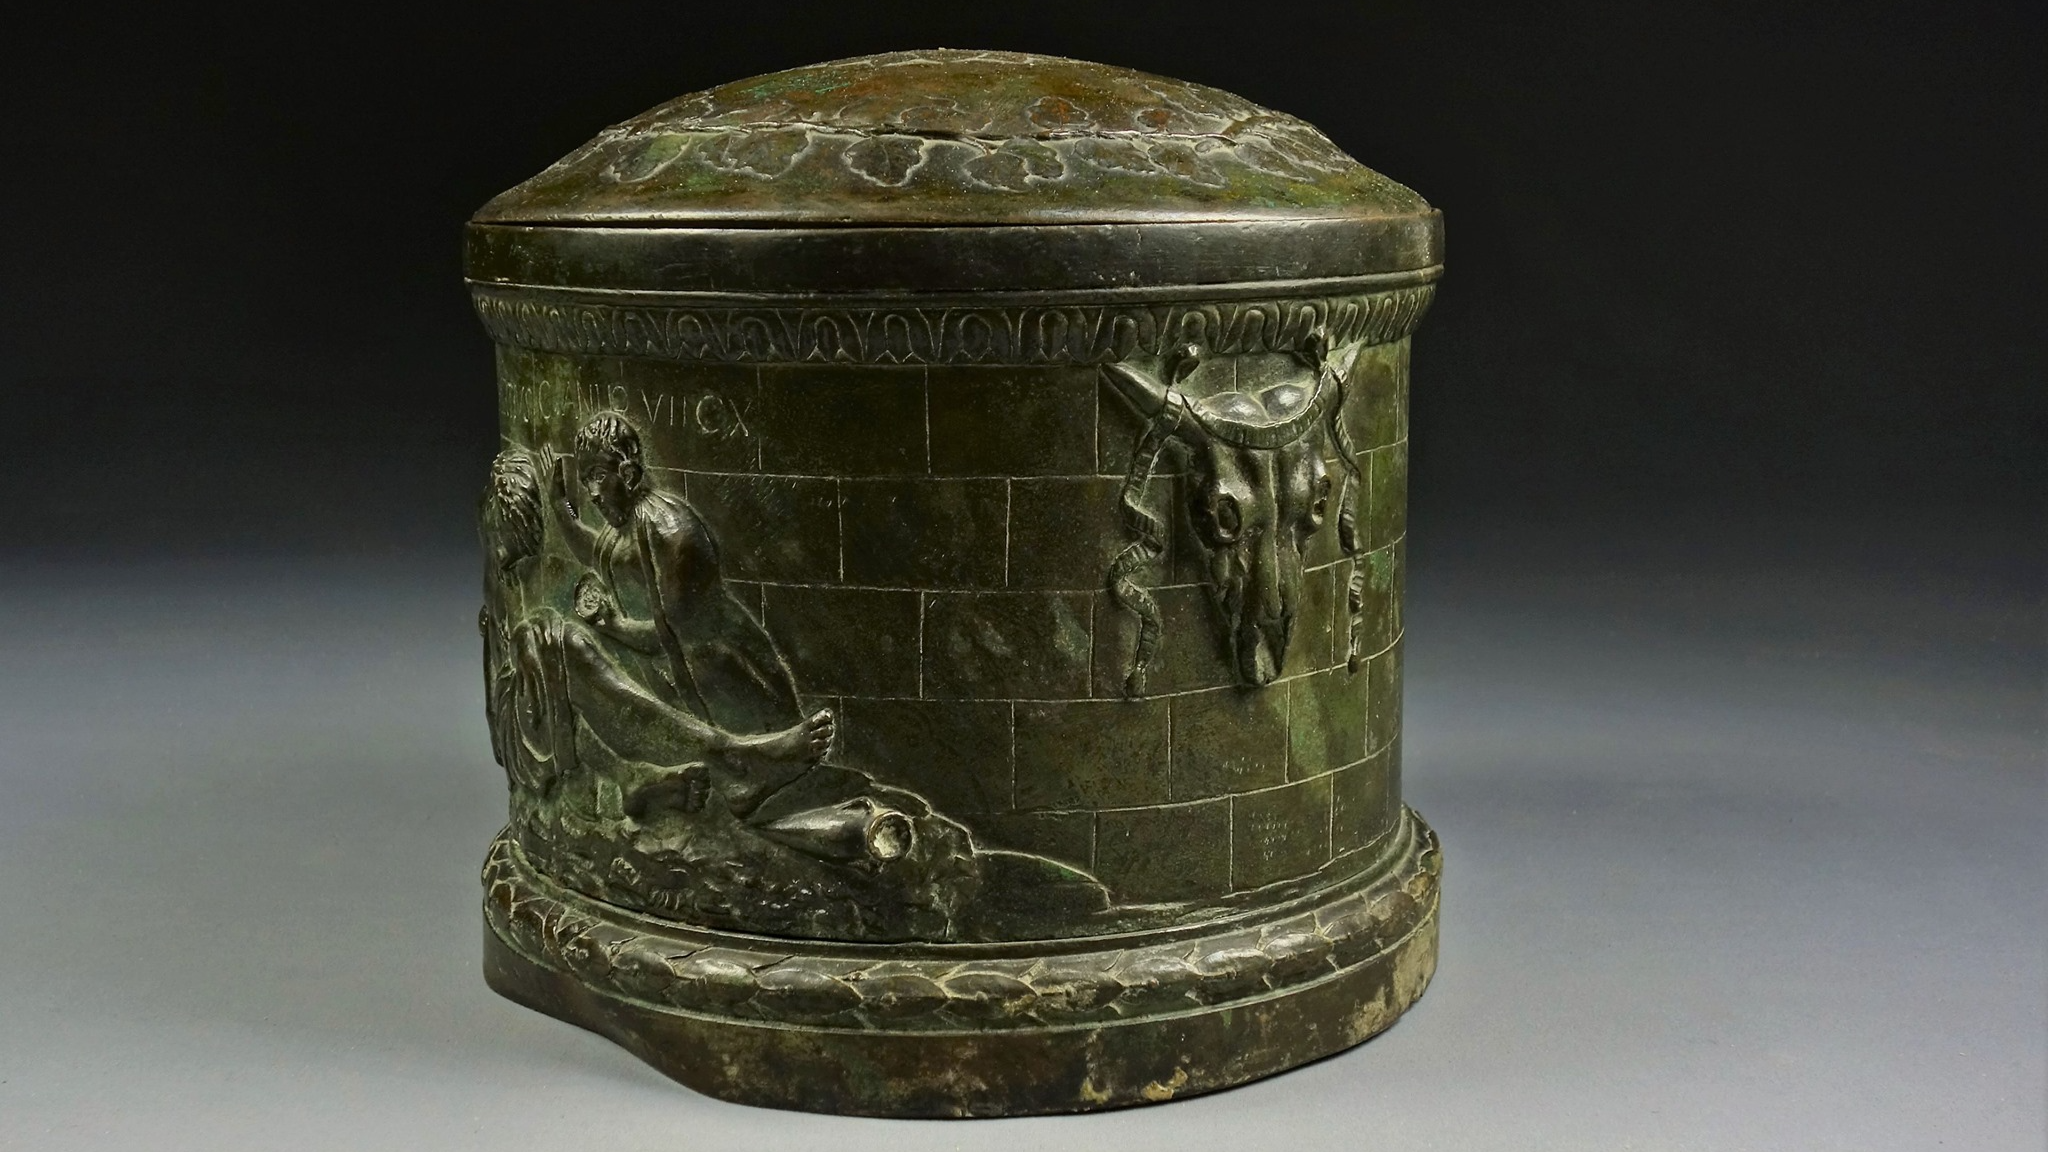 Le Forum antique de Bavay achète une fausse urne antique pour l'exposer